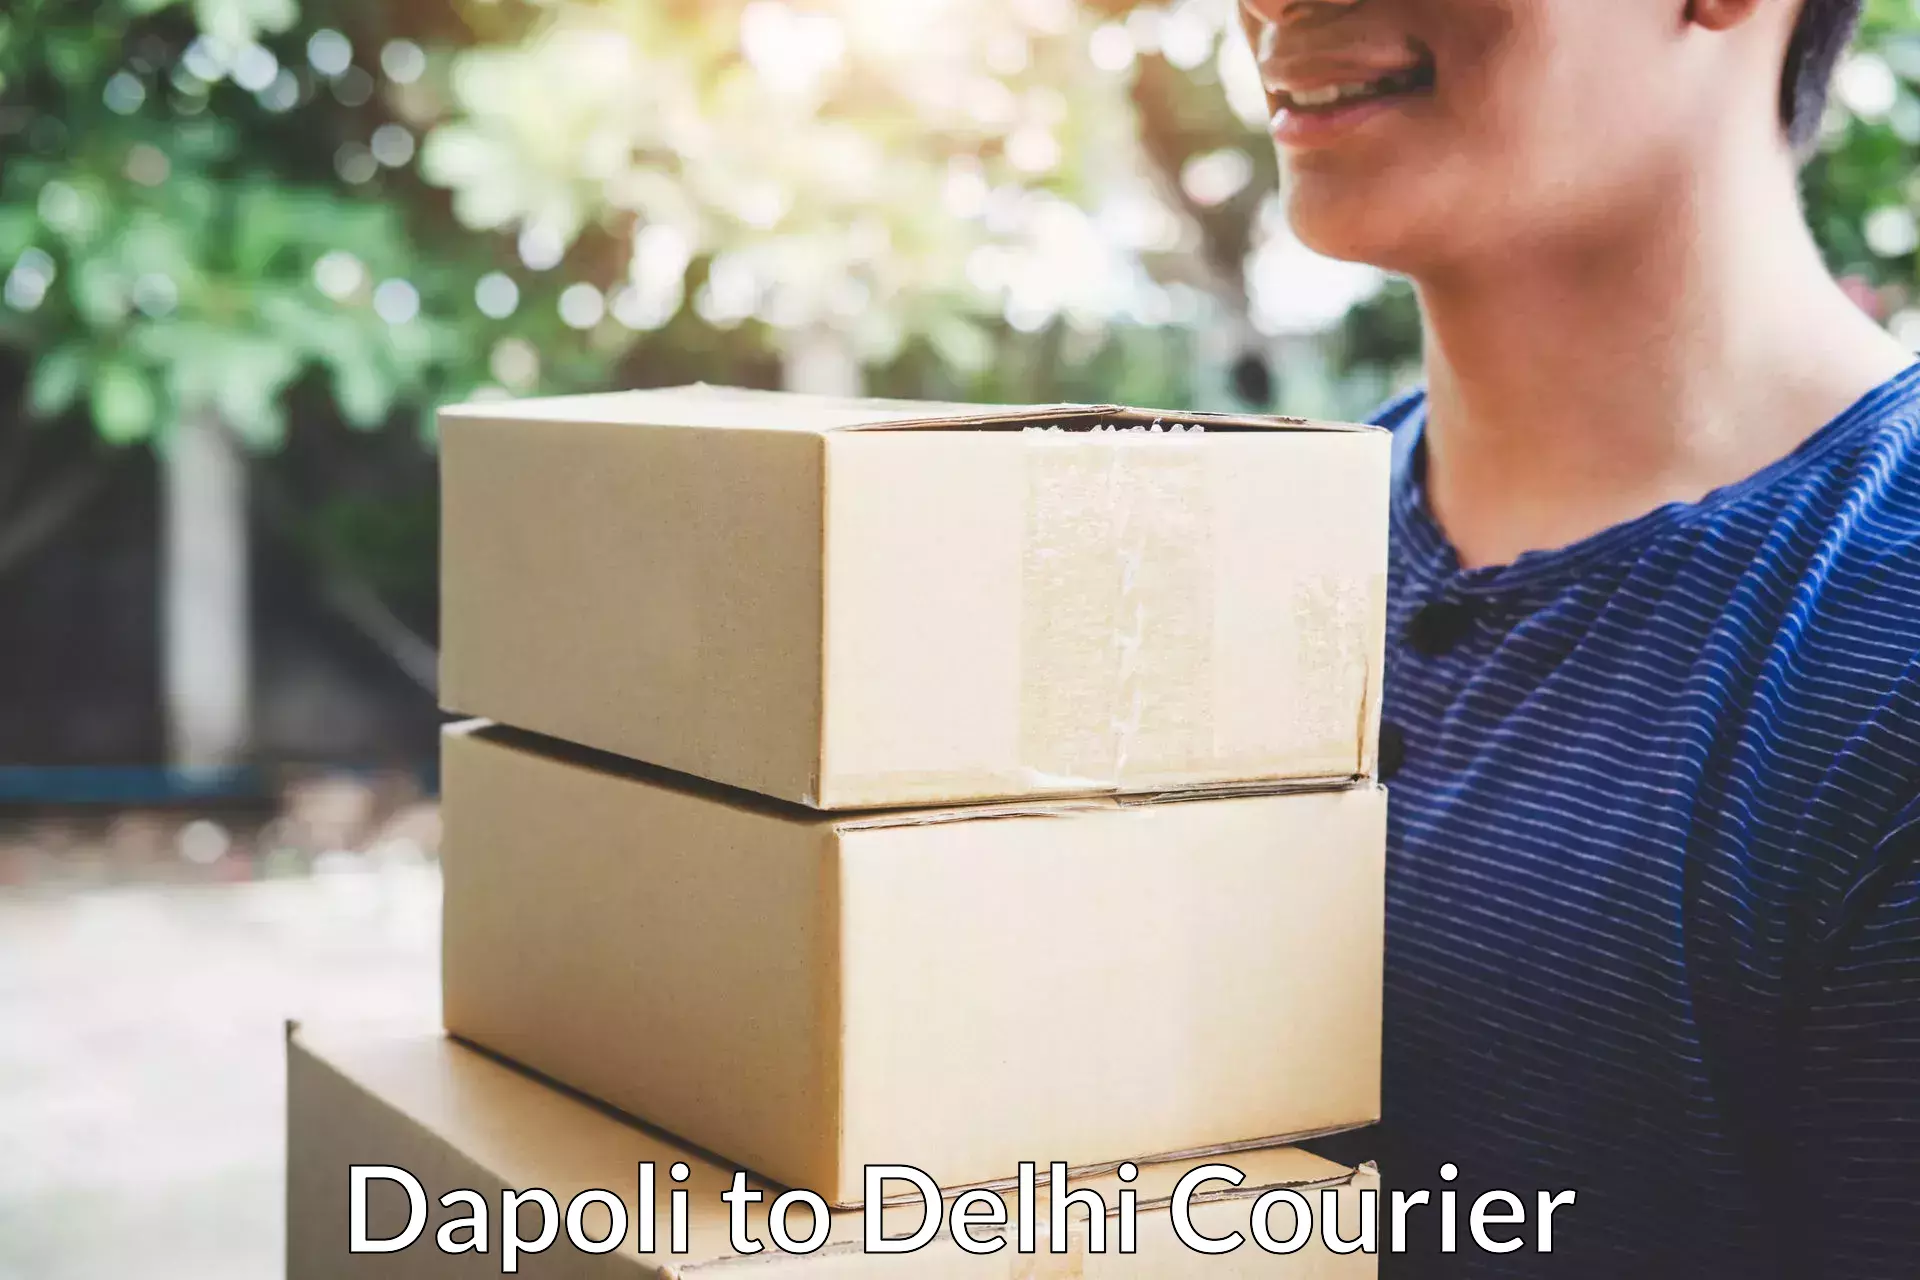 Door-to-door relocation services Dapoli to Jamia Hamdard New Delhi